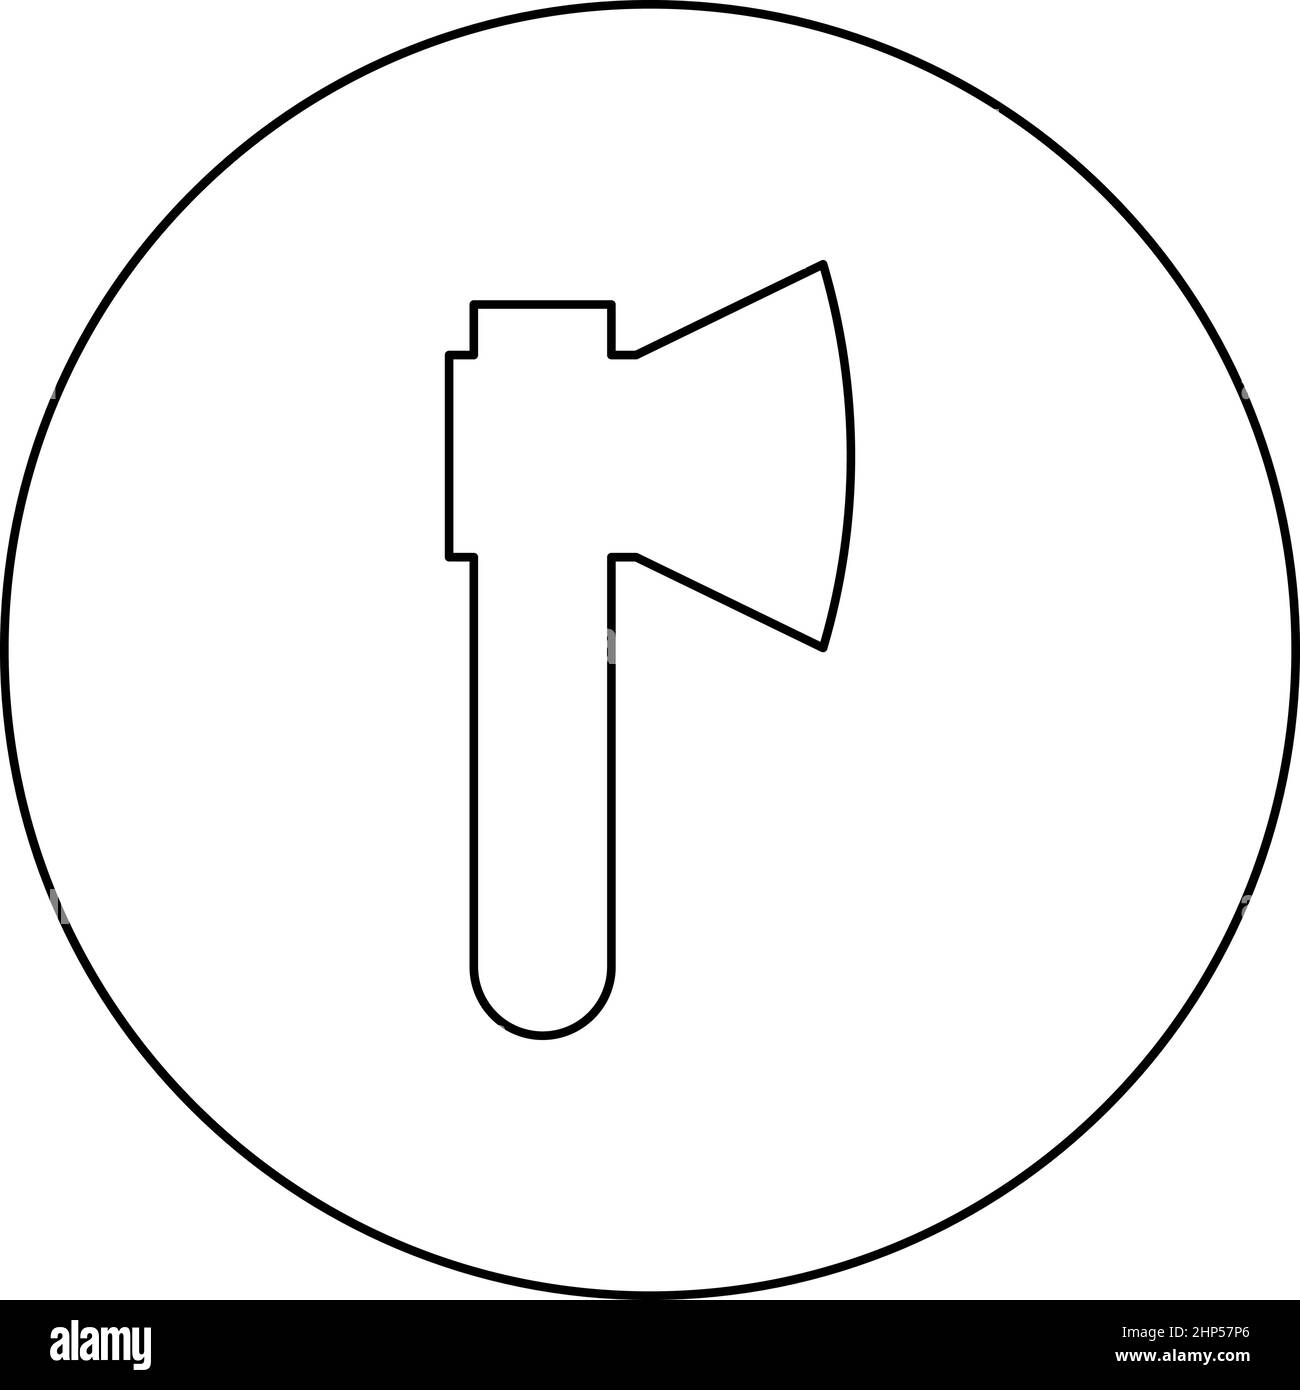 AX-Axt-Symbol in kreisrundem schwarzem Farbvektorbild mit durchgehtem Umriss Stock Vektor